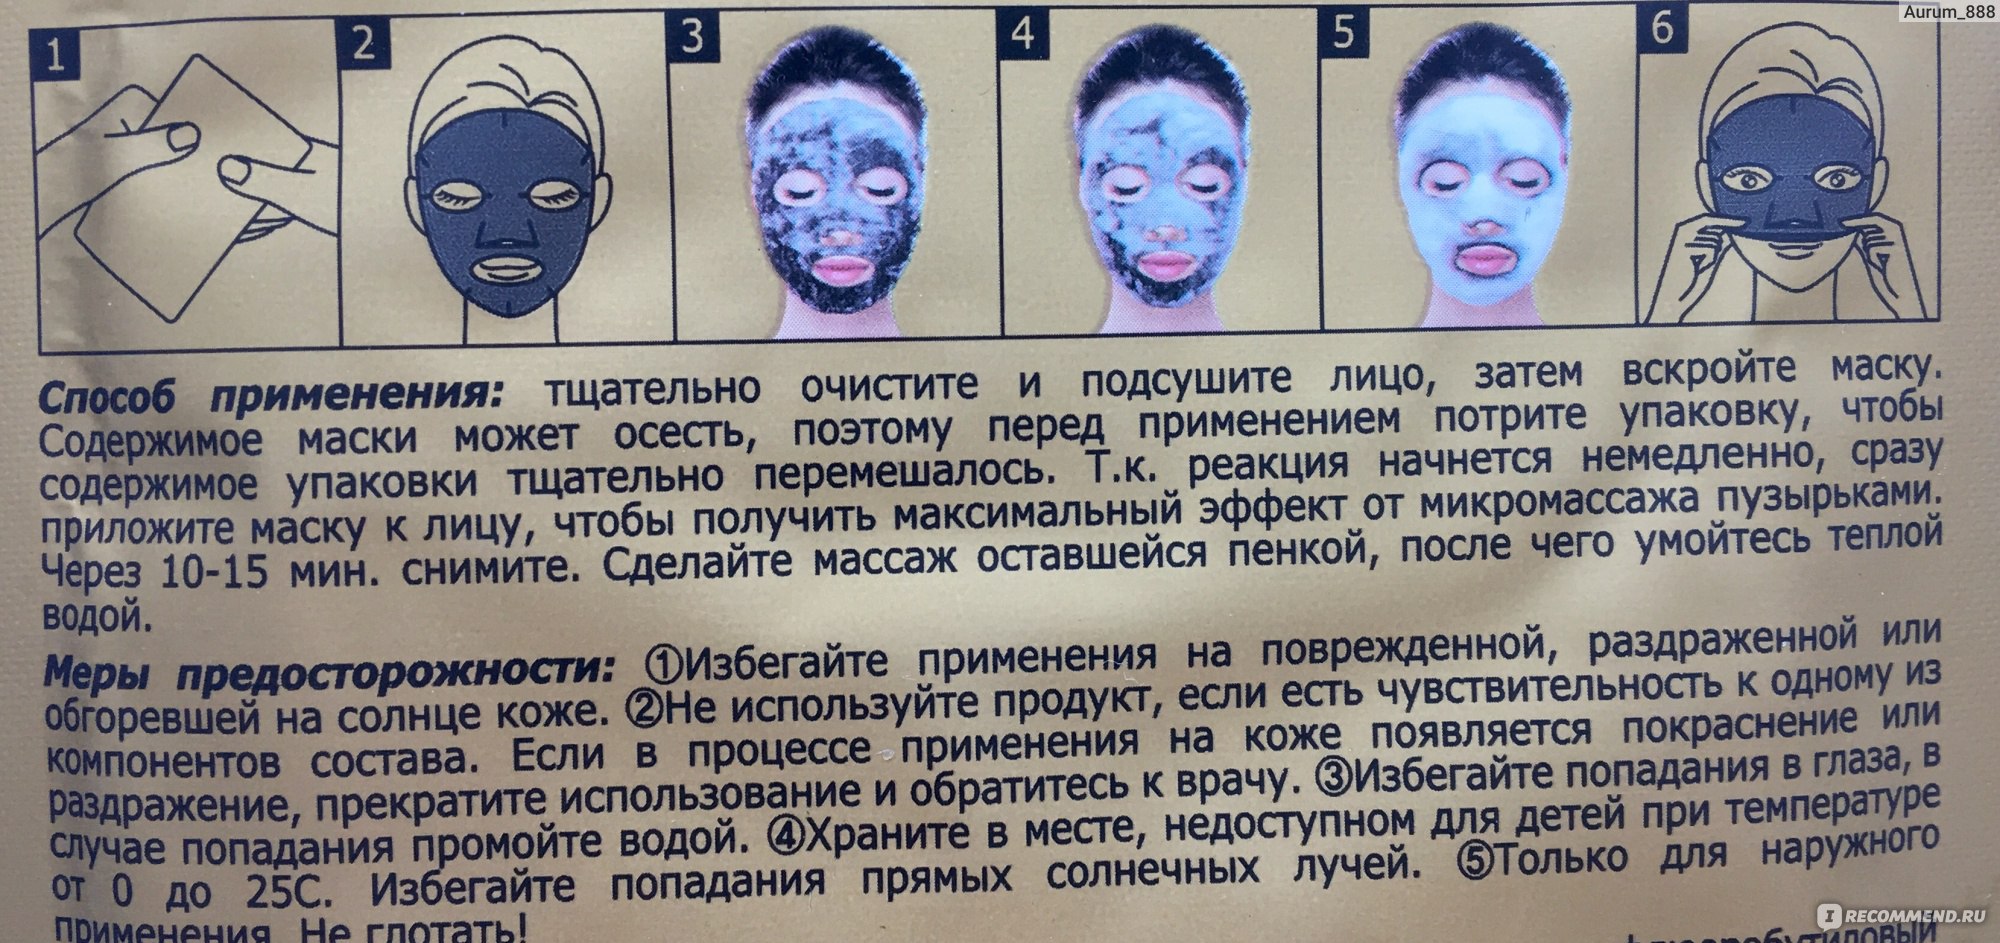 Сколько можно держать маску